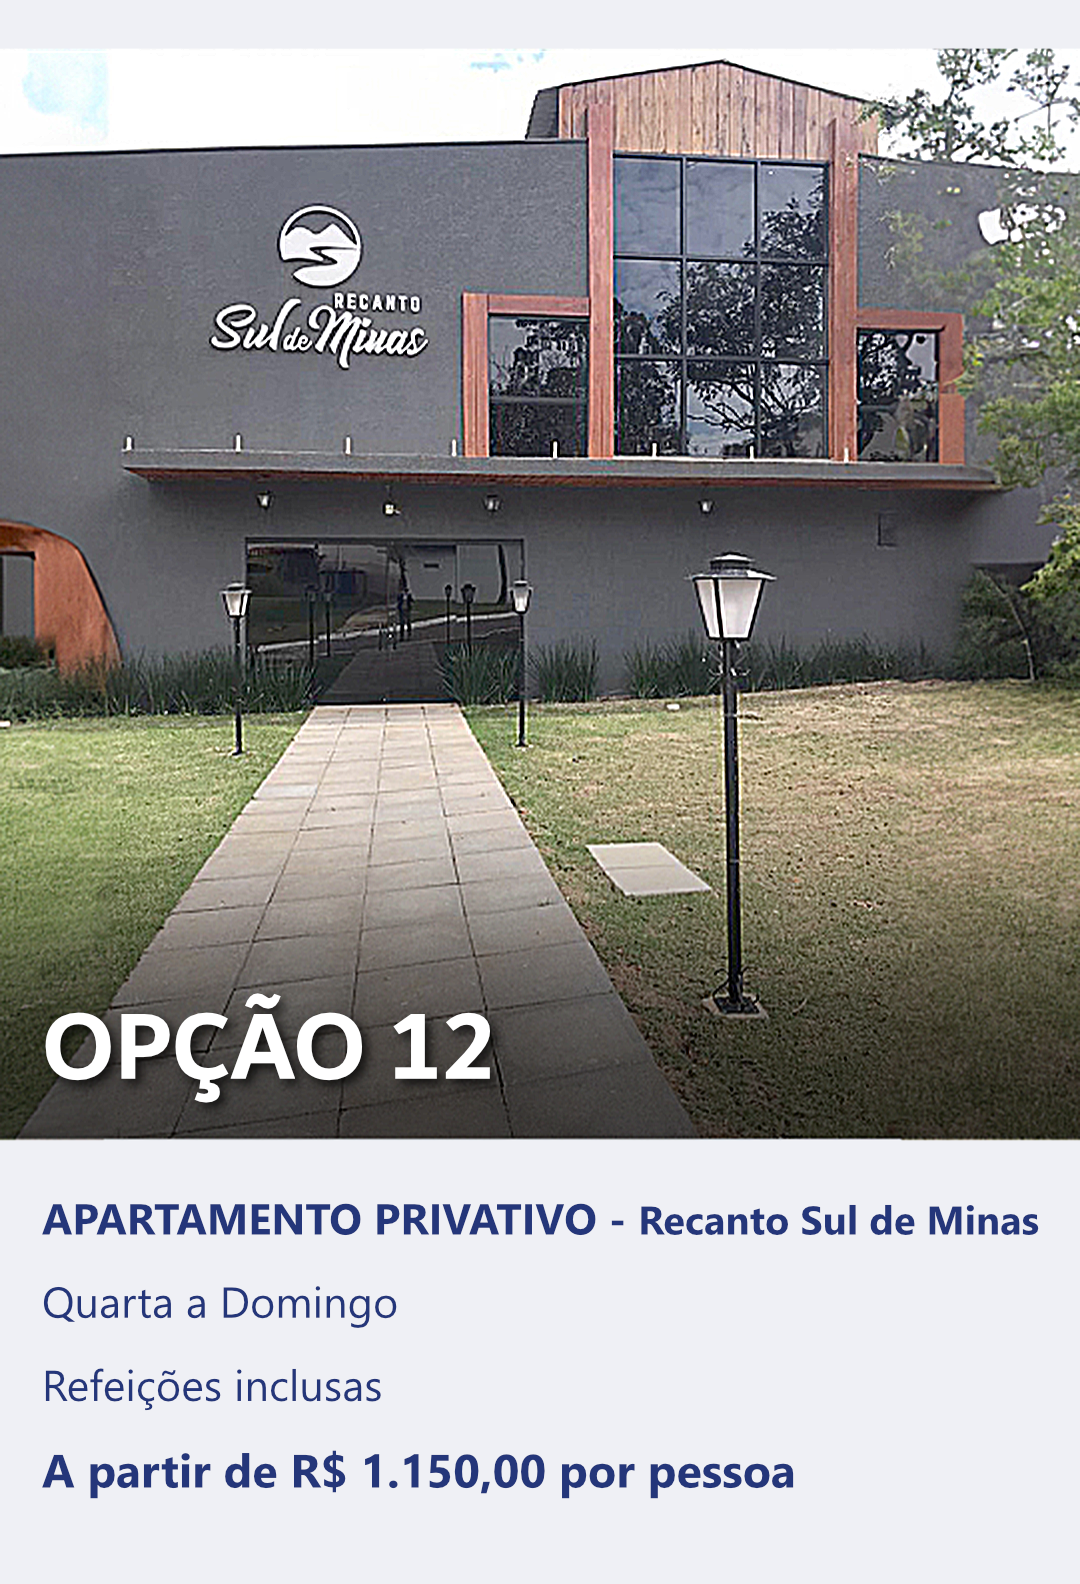 OPTION 12 - PRIVATE APARTMENT - Recanto Sul de Minas